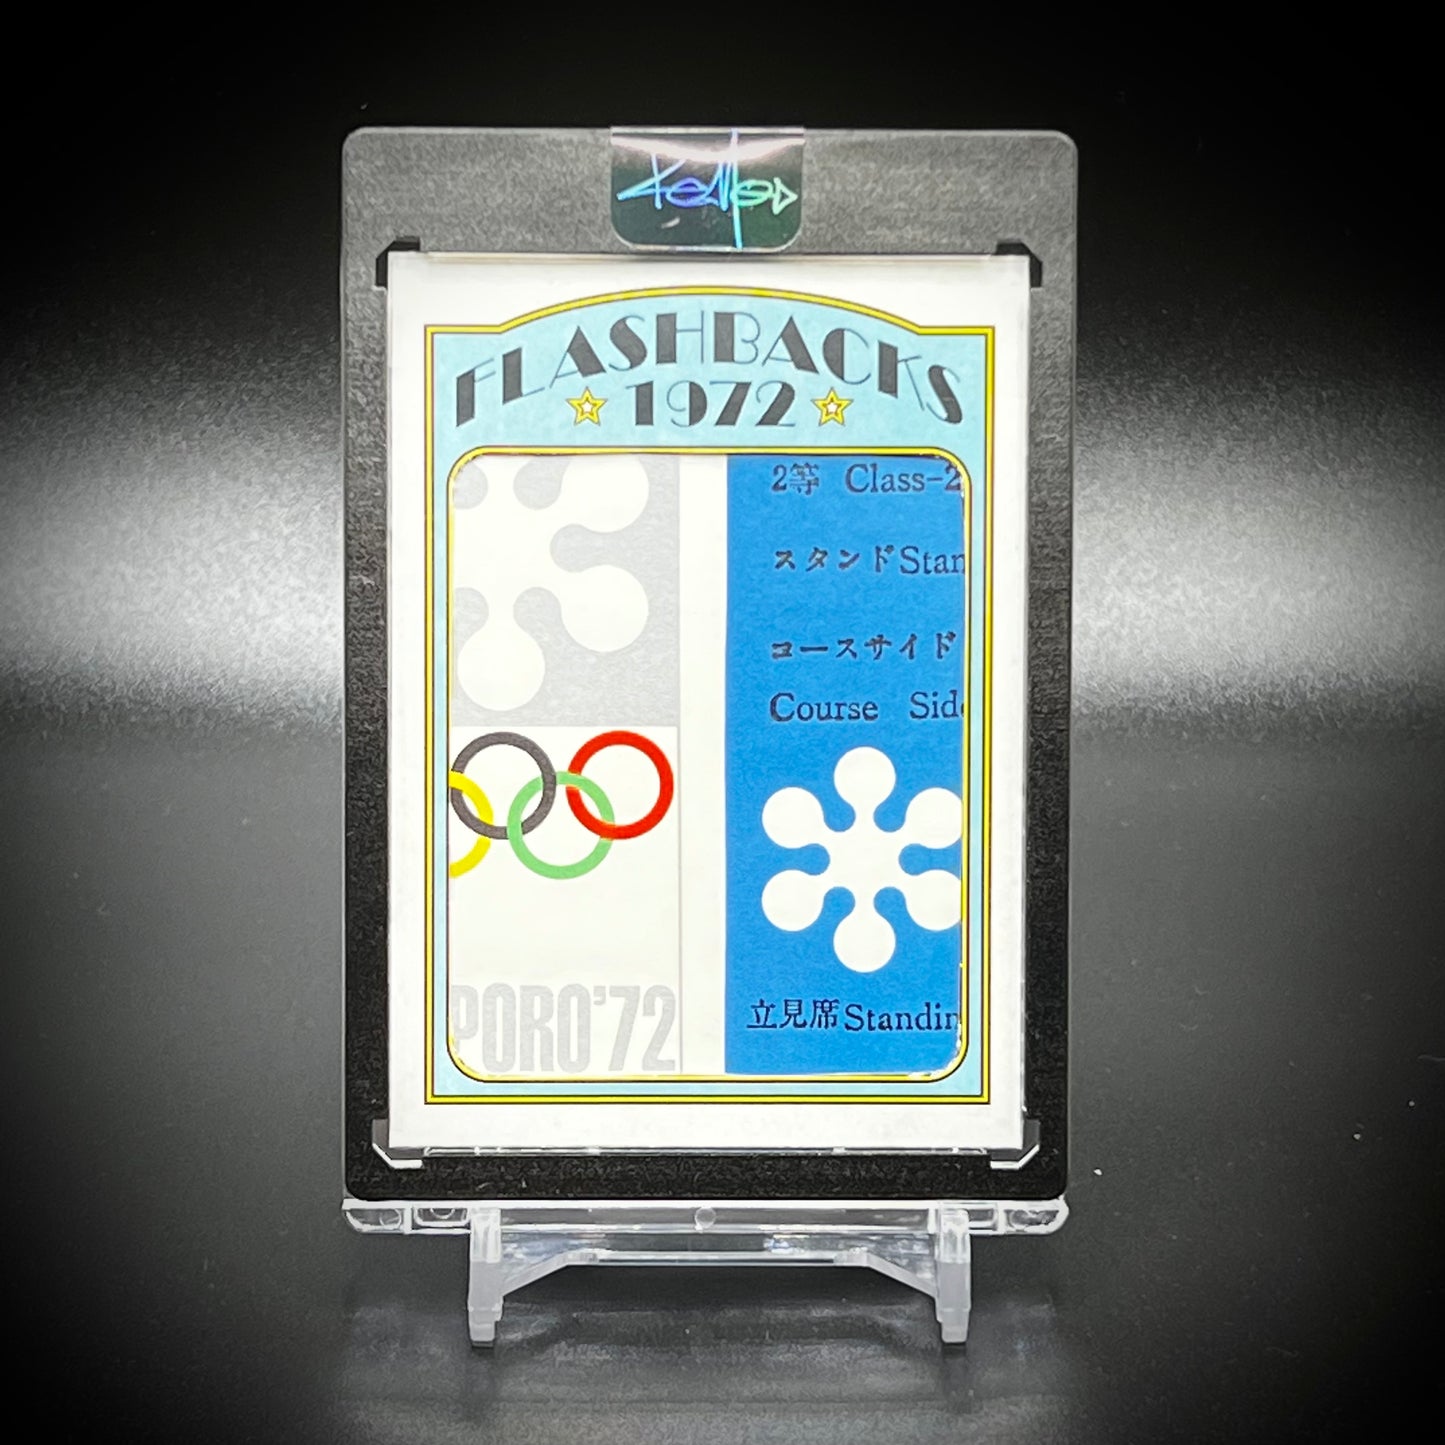 1972 Flashbacks “Sapporo Olympics Ticket” Art Card By KEMO